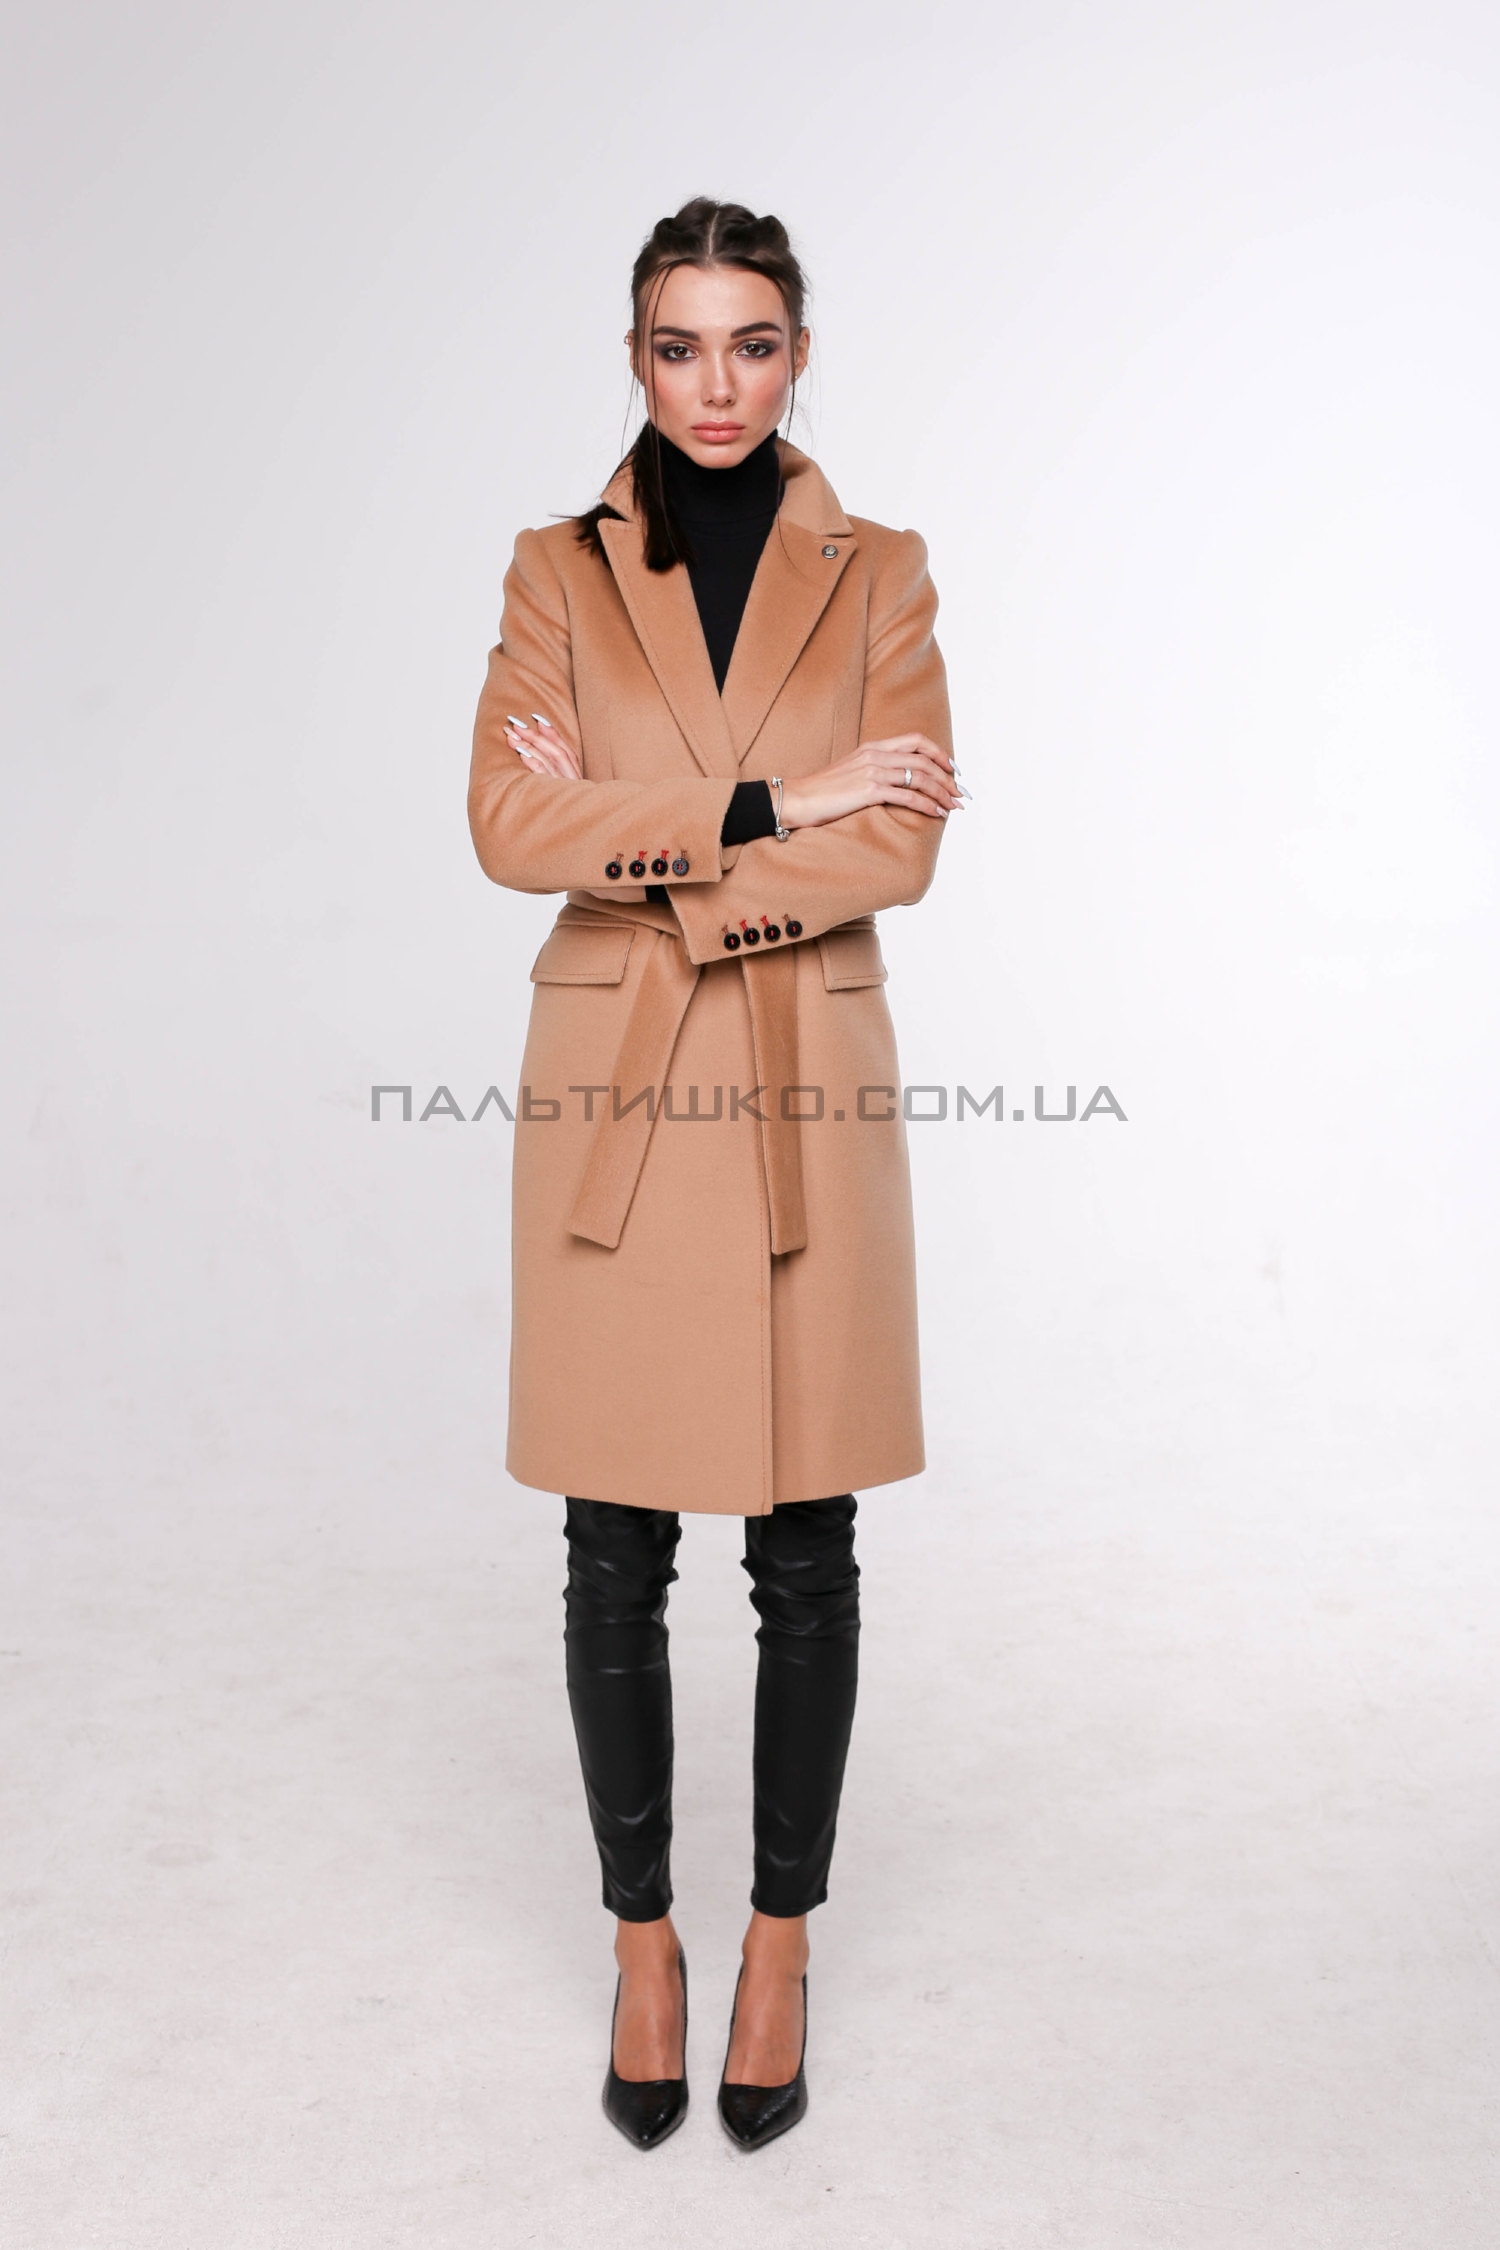  Женское пальто № 123